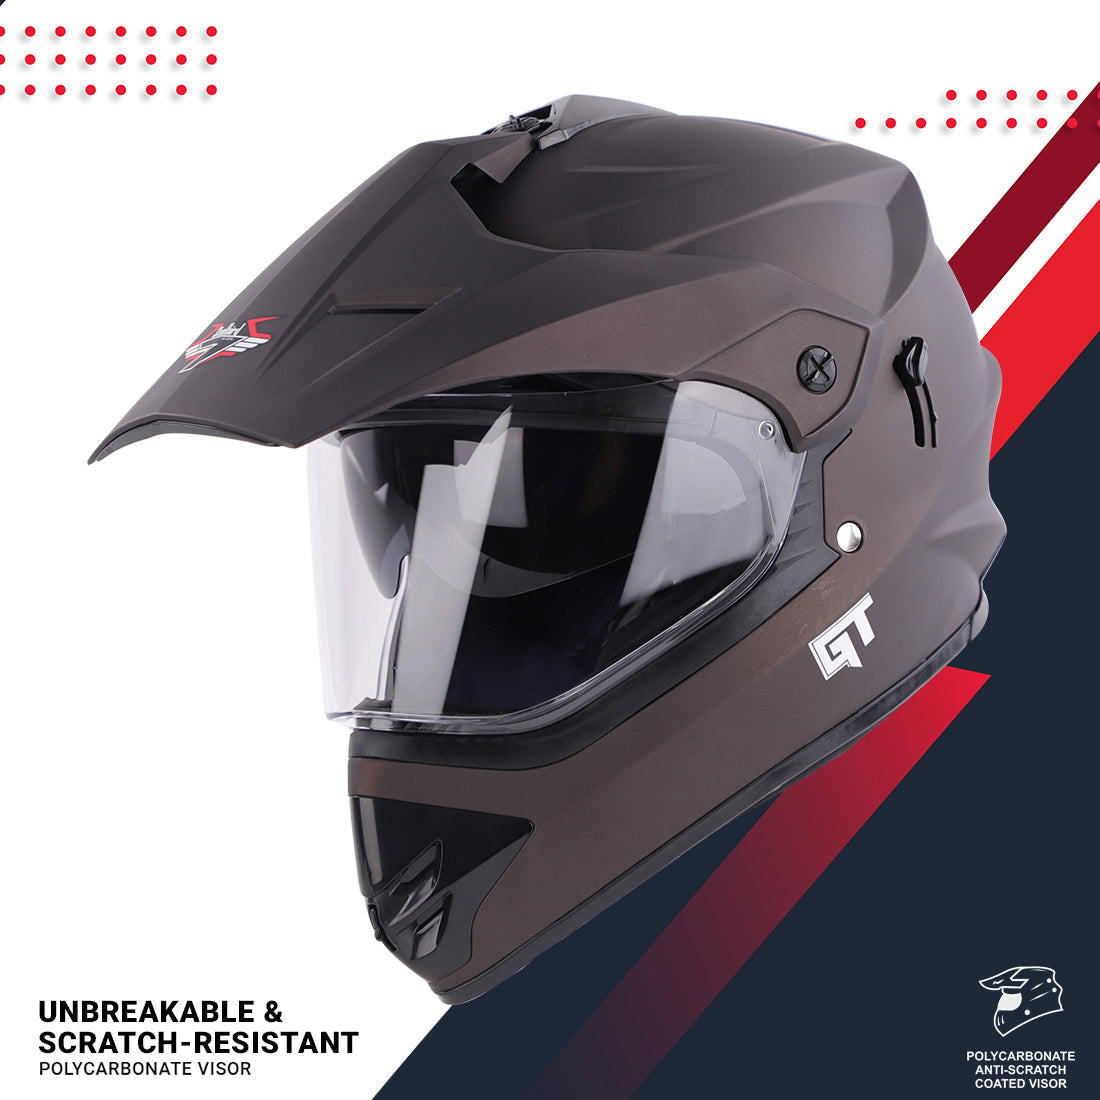 Steelbird GT Off Road ISI Certified Motocross Double Visor Full Face Helmet Outer Clear Visor and Inner Smoke Sun Shield (Matt Royal Brown)